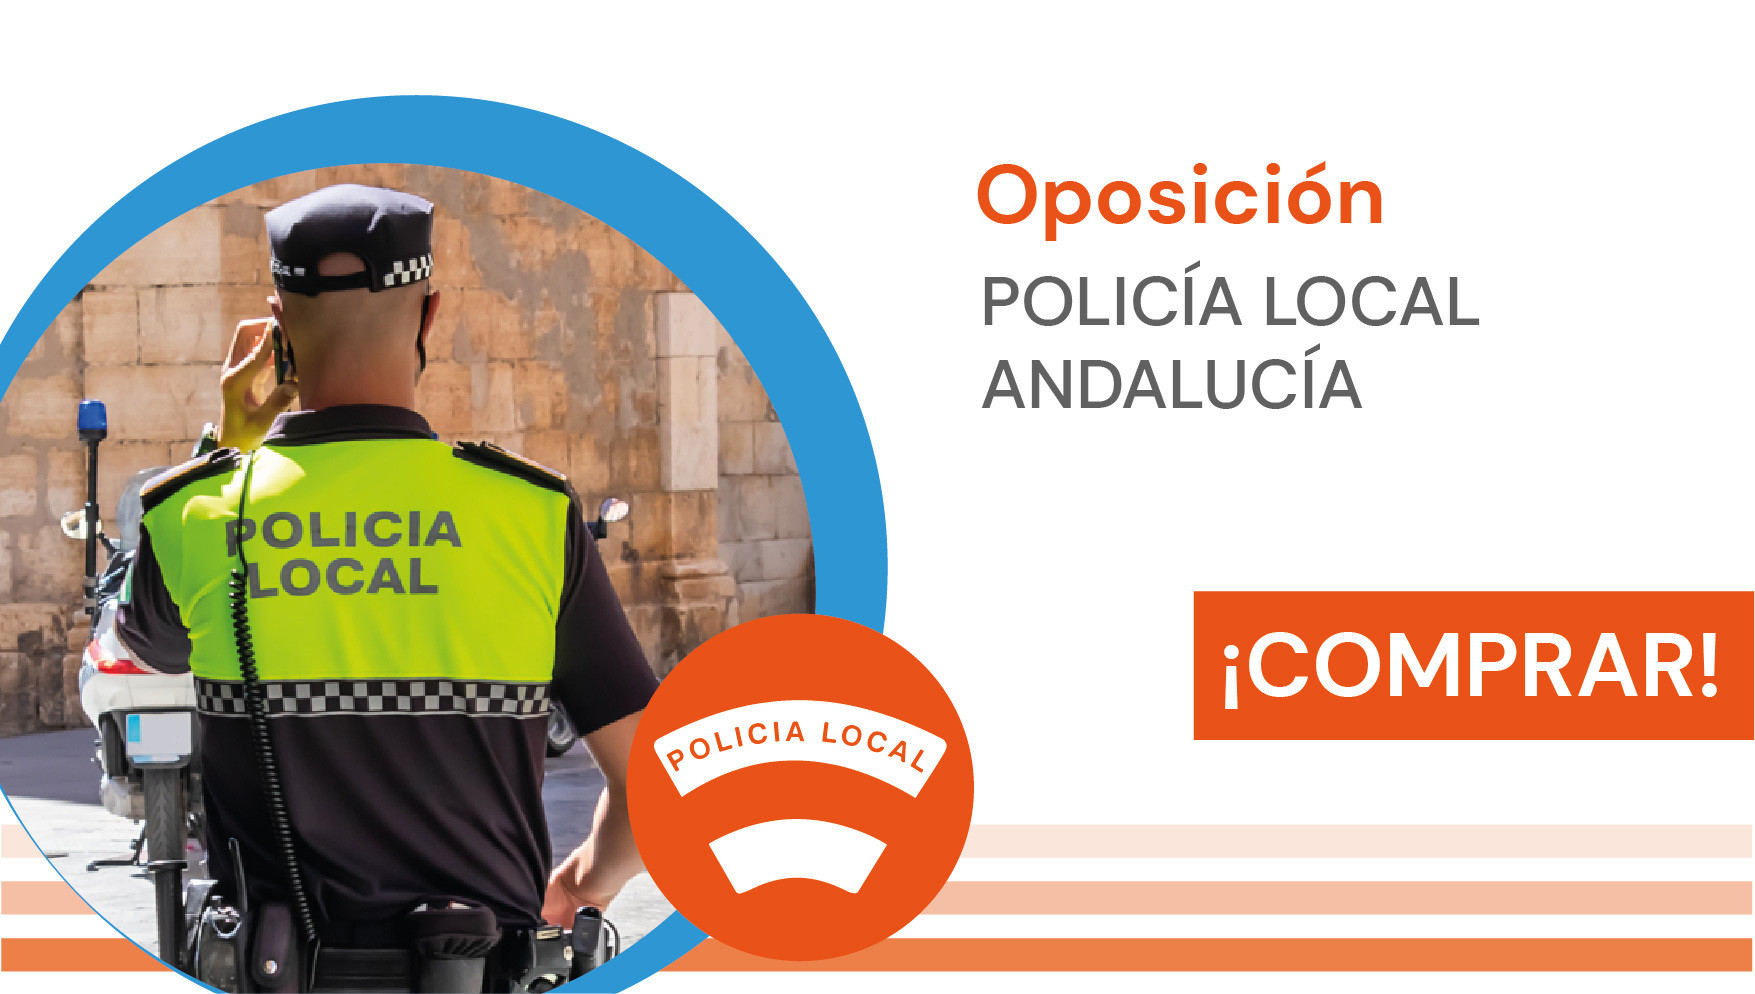 Policía Local Andalucía